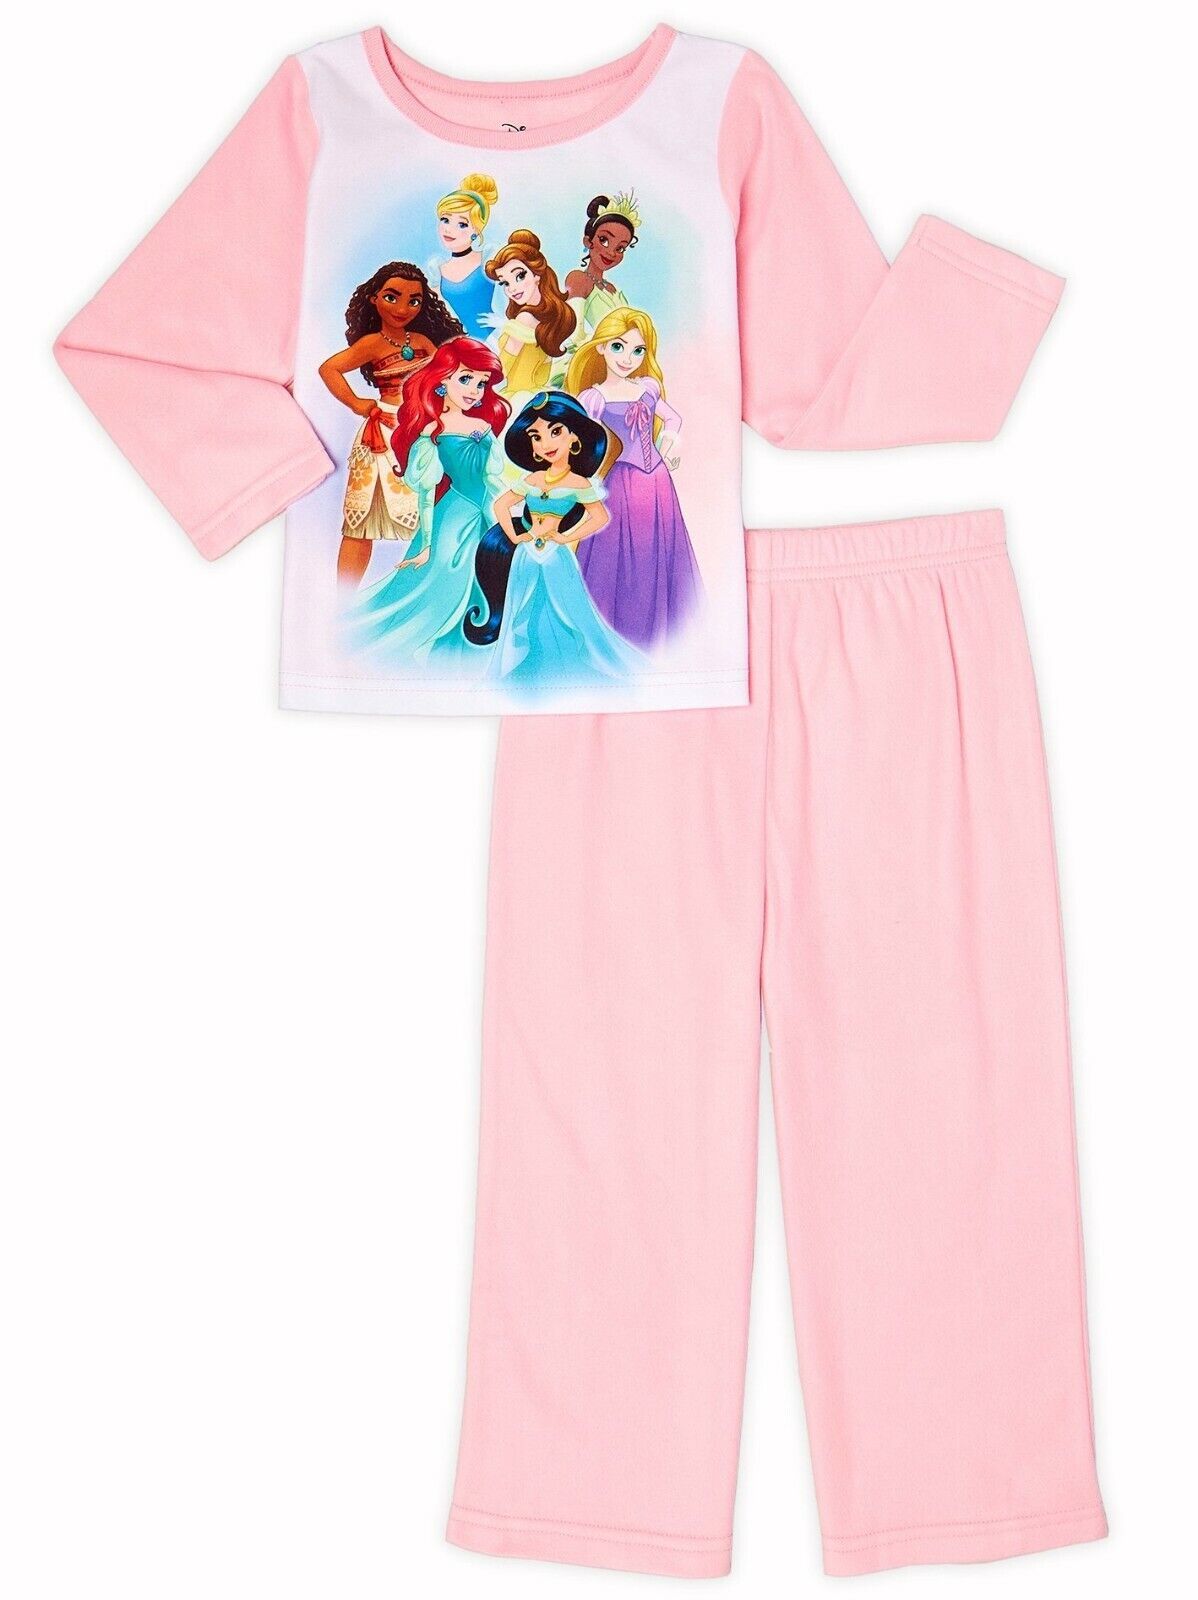 Disney Princesa Polar Pijama Set Nwt Niño Talla 2T, 3T, 4T O 5T - £9.33 GBP - £10.19 GBP